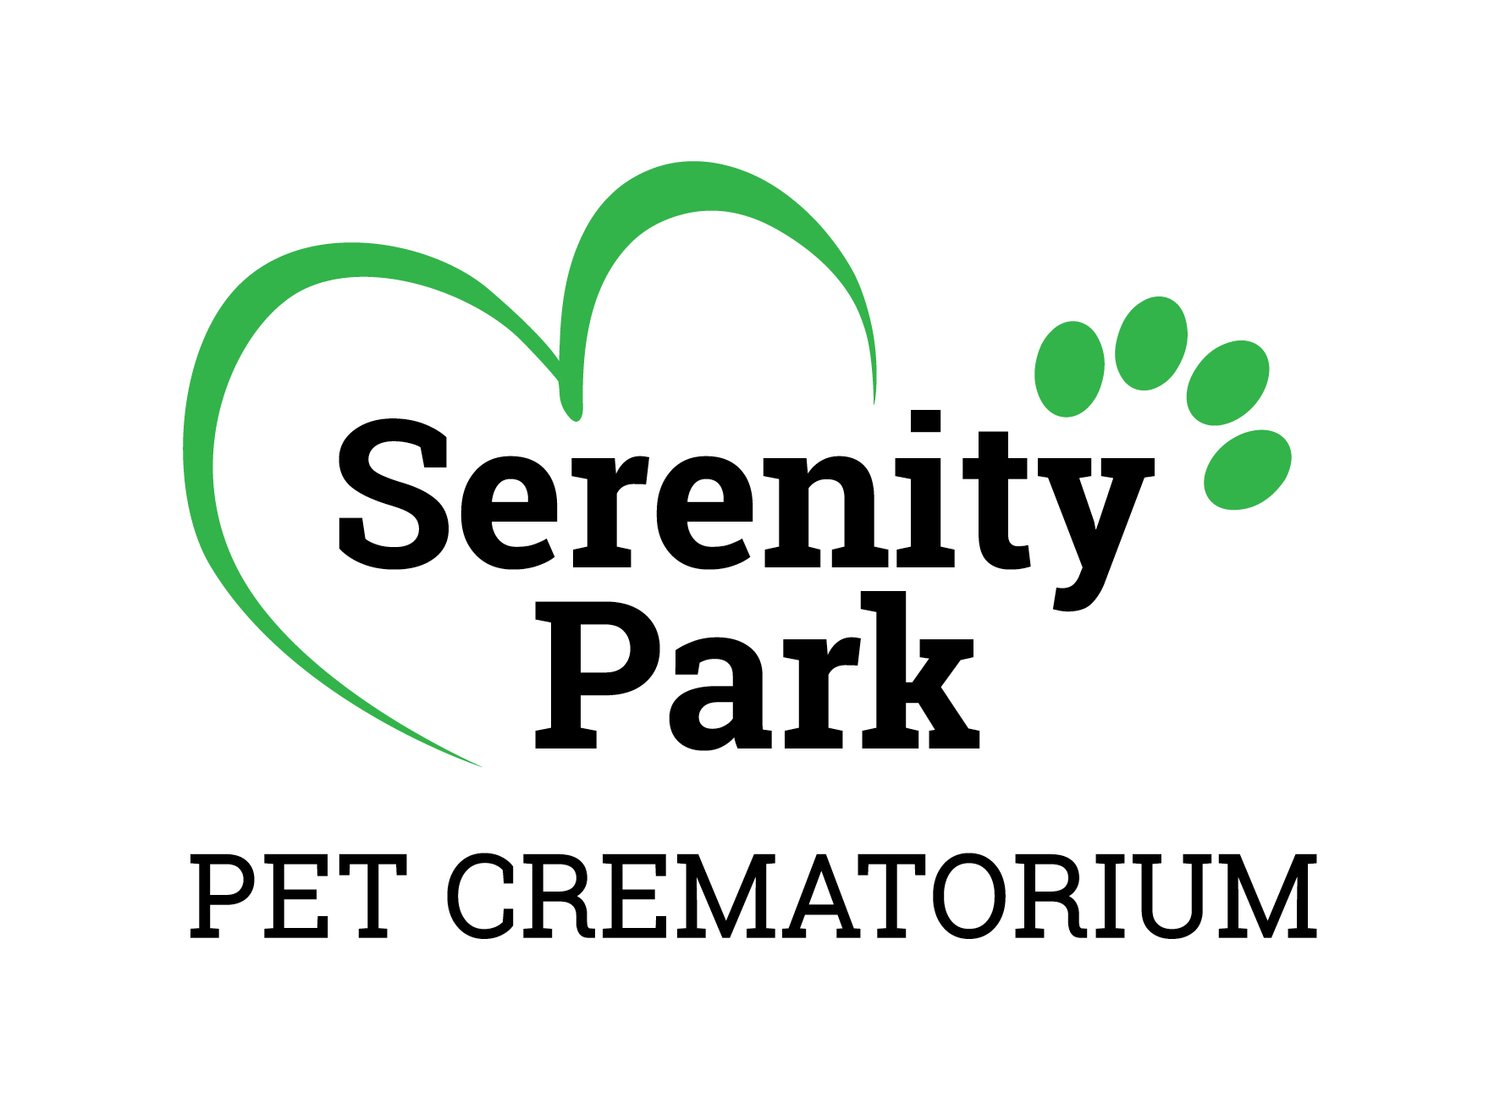 Serenity Park Pet Crematorium